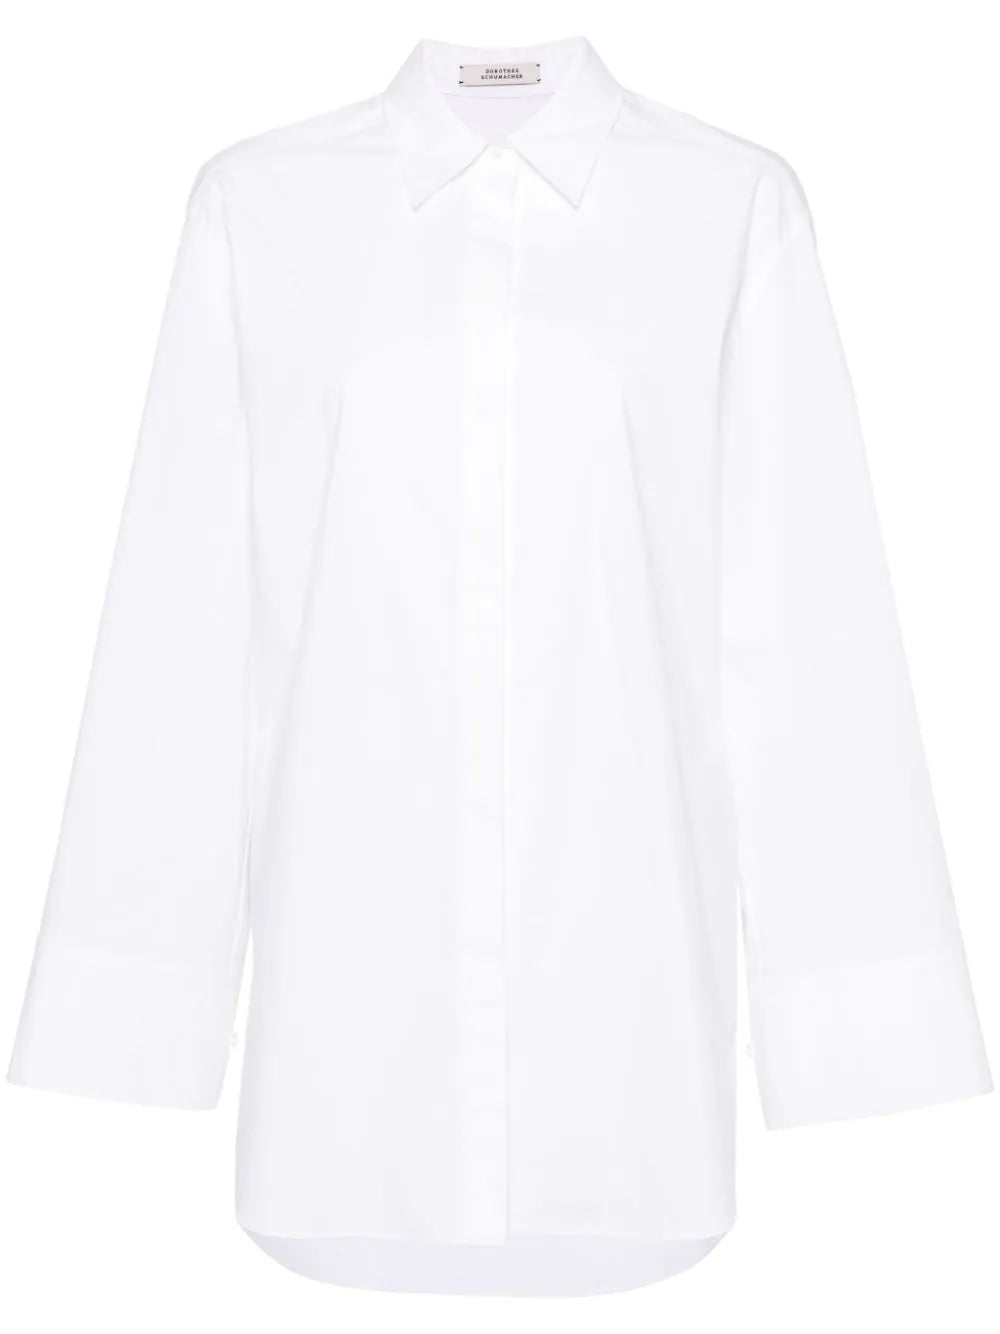 Poplin power blouse, white